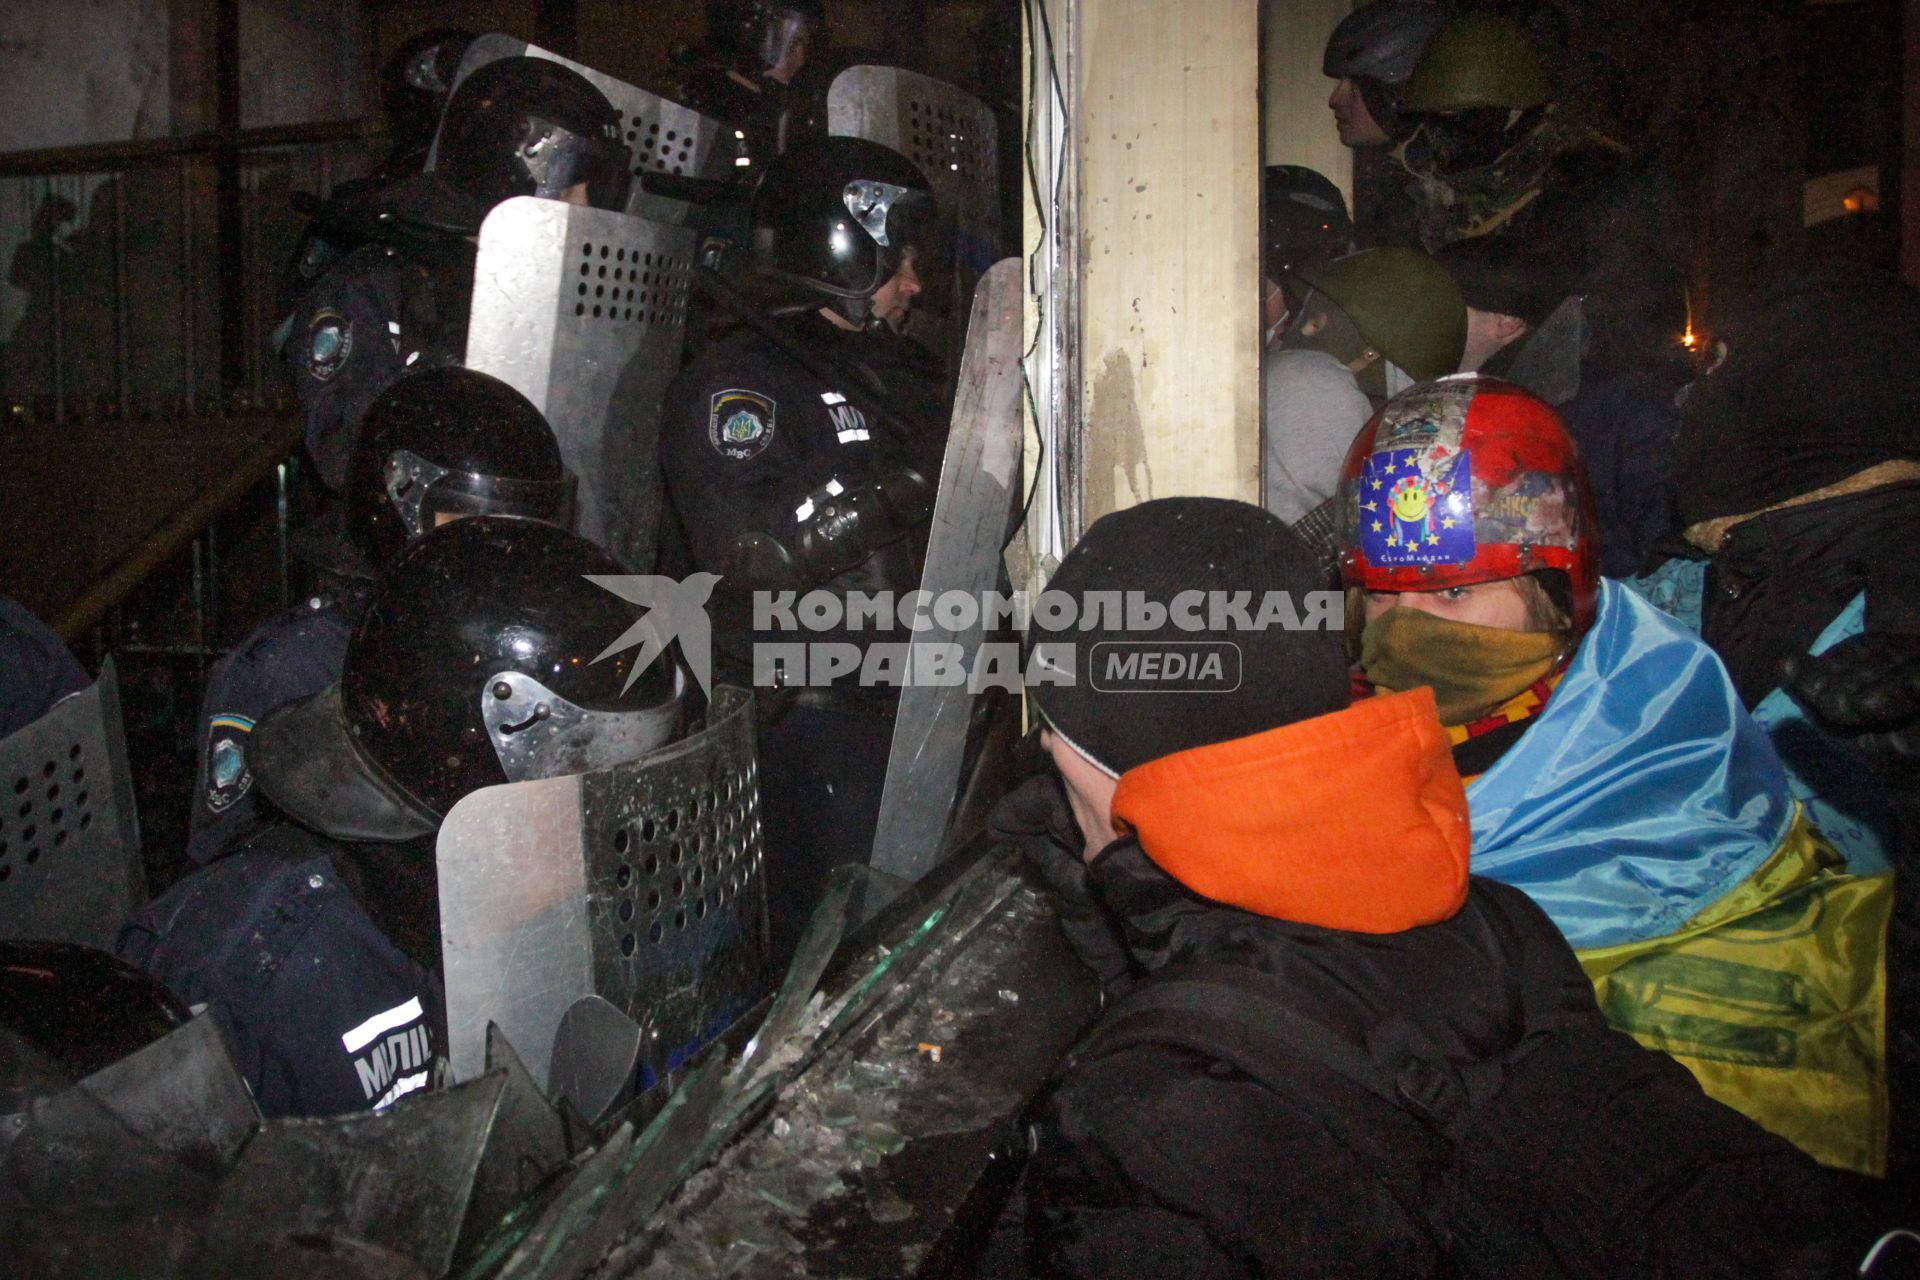 Протестующие штурмуют Украинский дом. На снимке: протестующие у входа в здание ведут переговоры с бойцом специального подразделения `Беркут`.